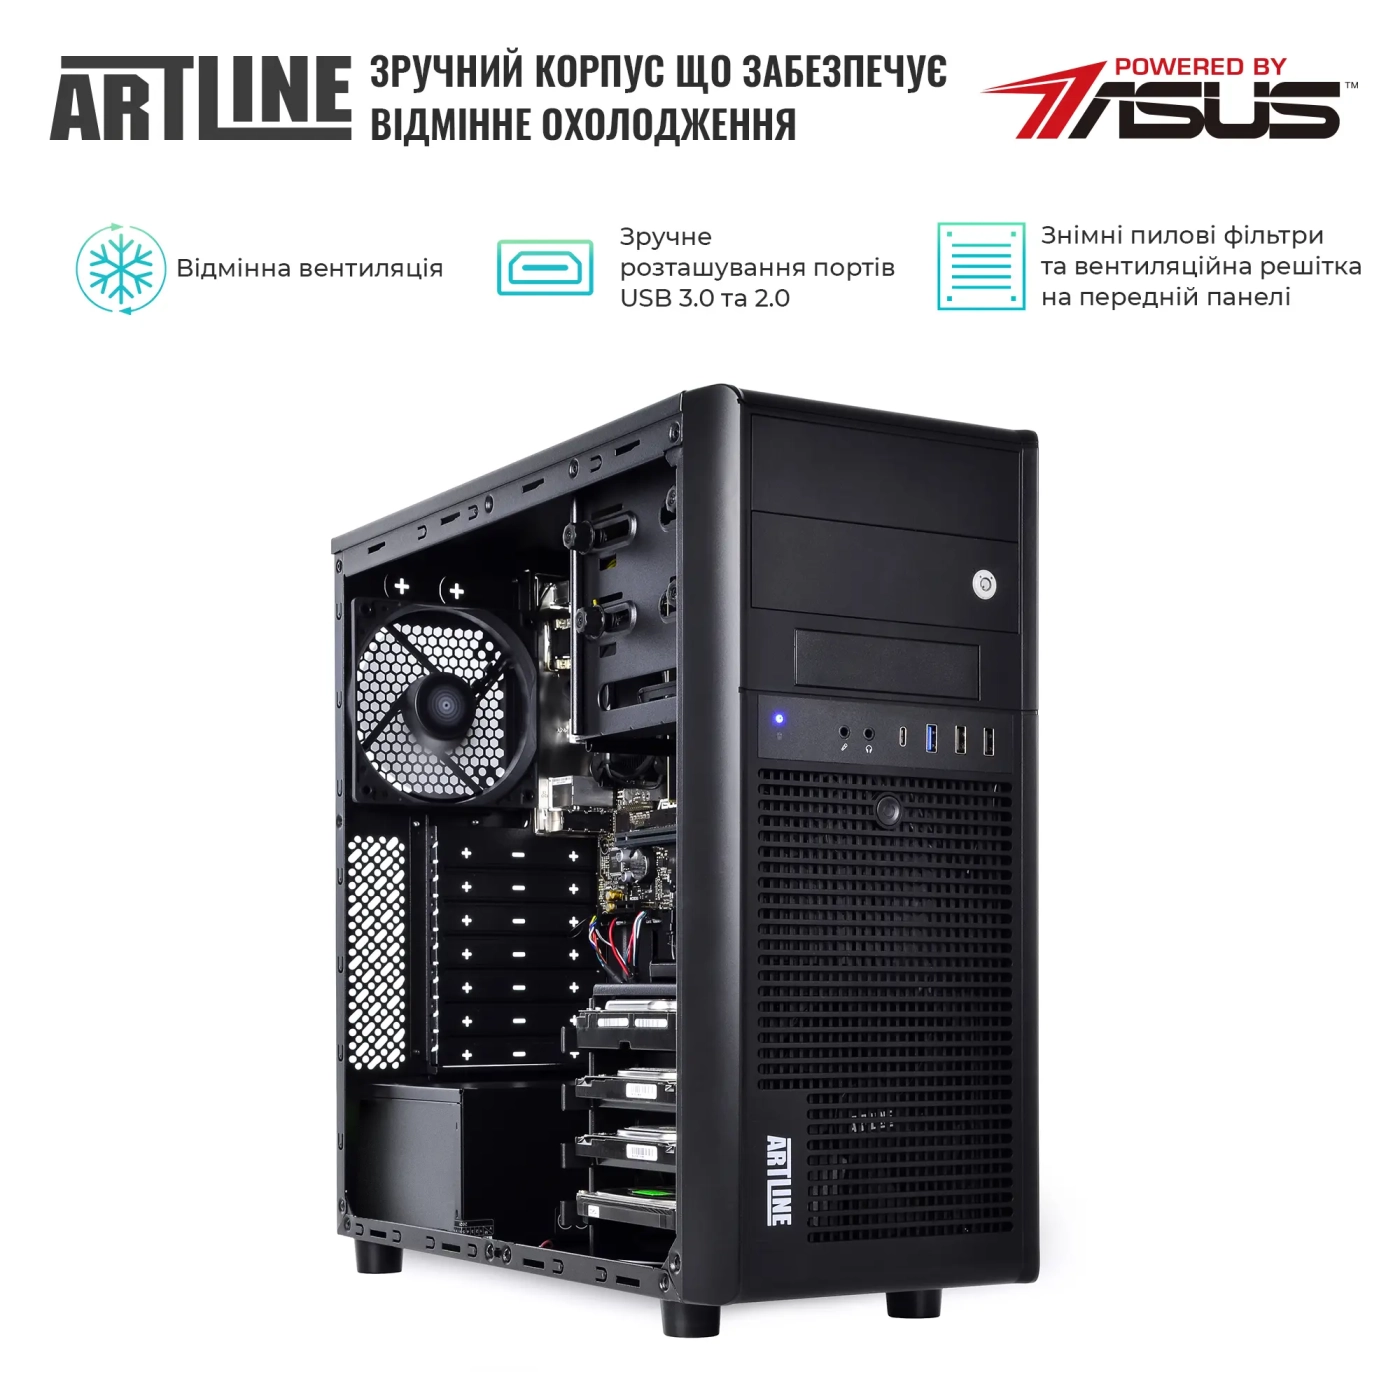 Купить Сервер ARTLINE Business T37 (T37v33) - фото 3